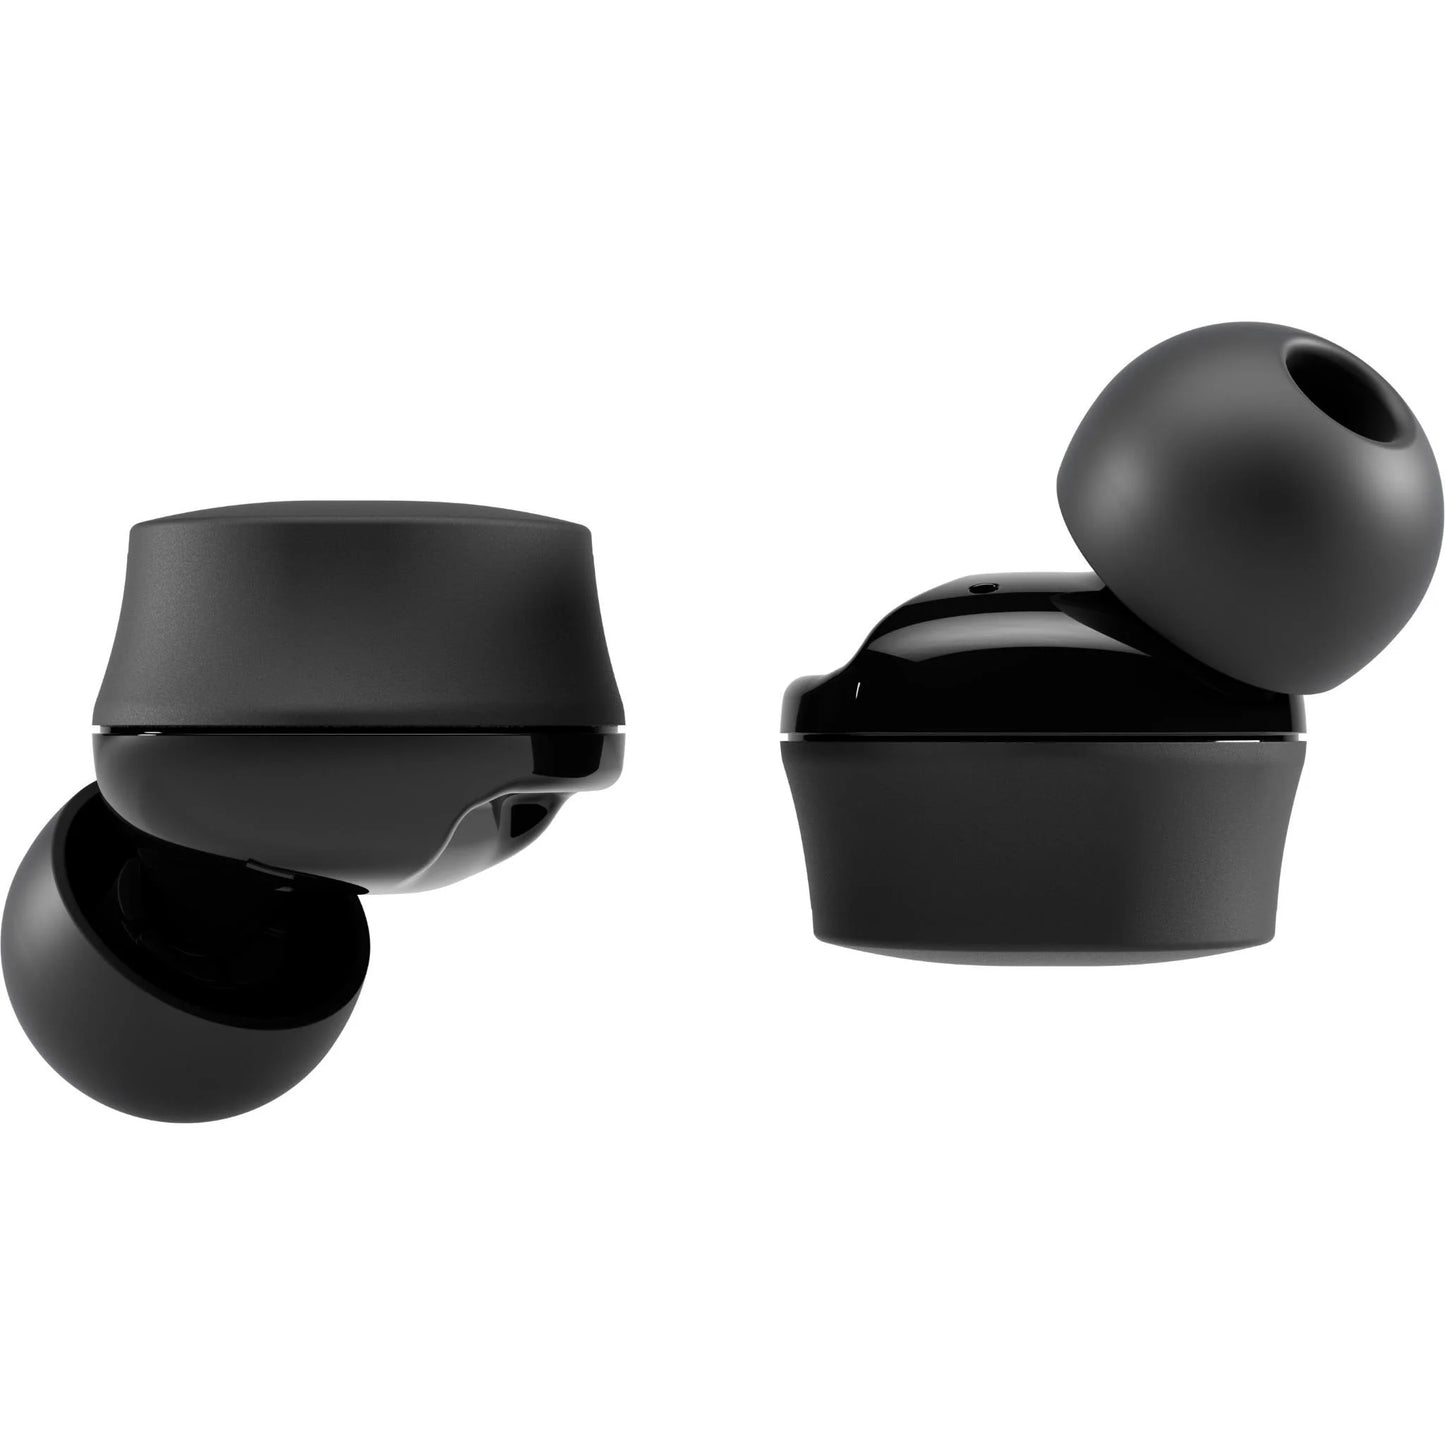 NuraBuds 2 True Wireless ANC In-Ear Headphones